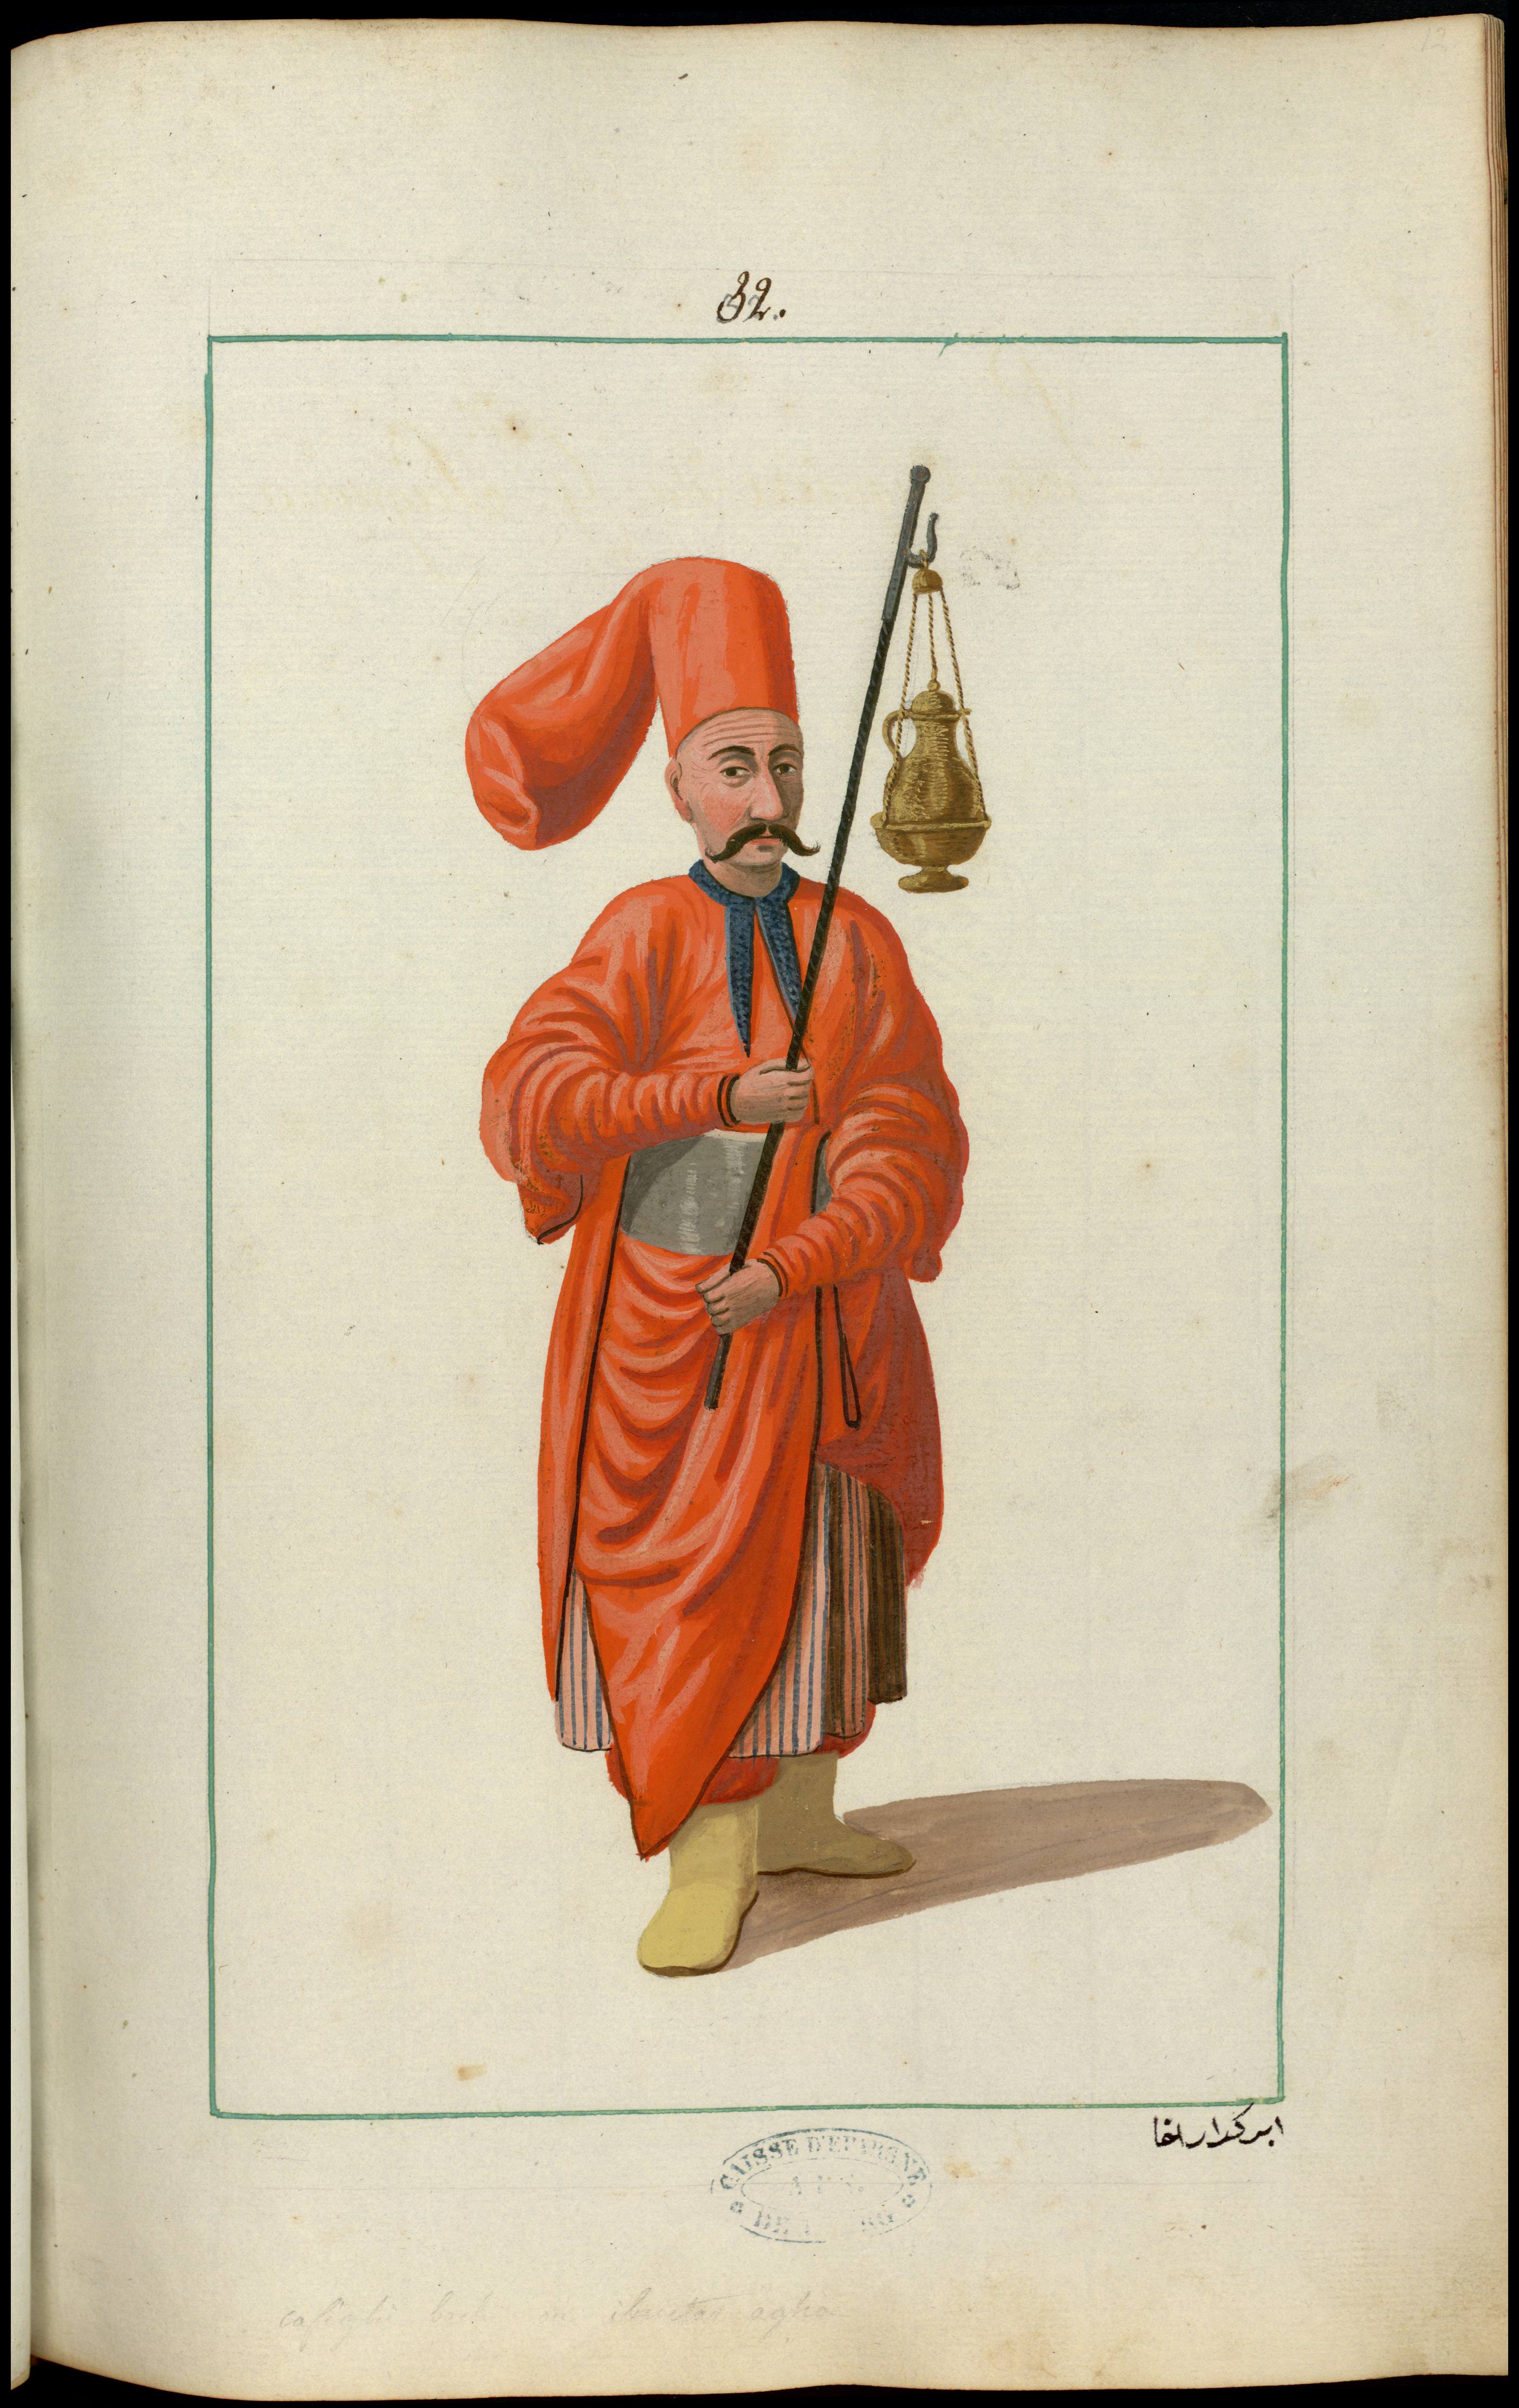 Hriktar agha : porte aiguière du sultan pour lui donner de l'eau lorsqu'il veut se laver les mains